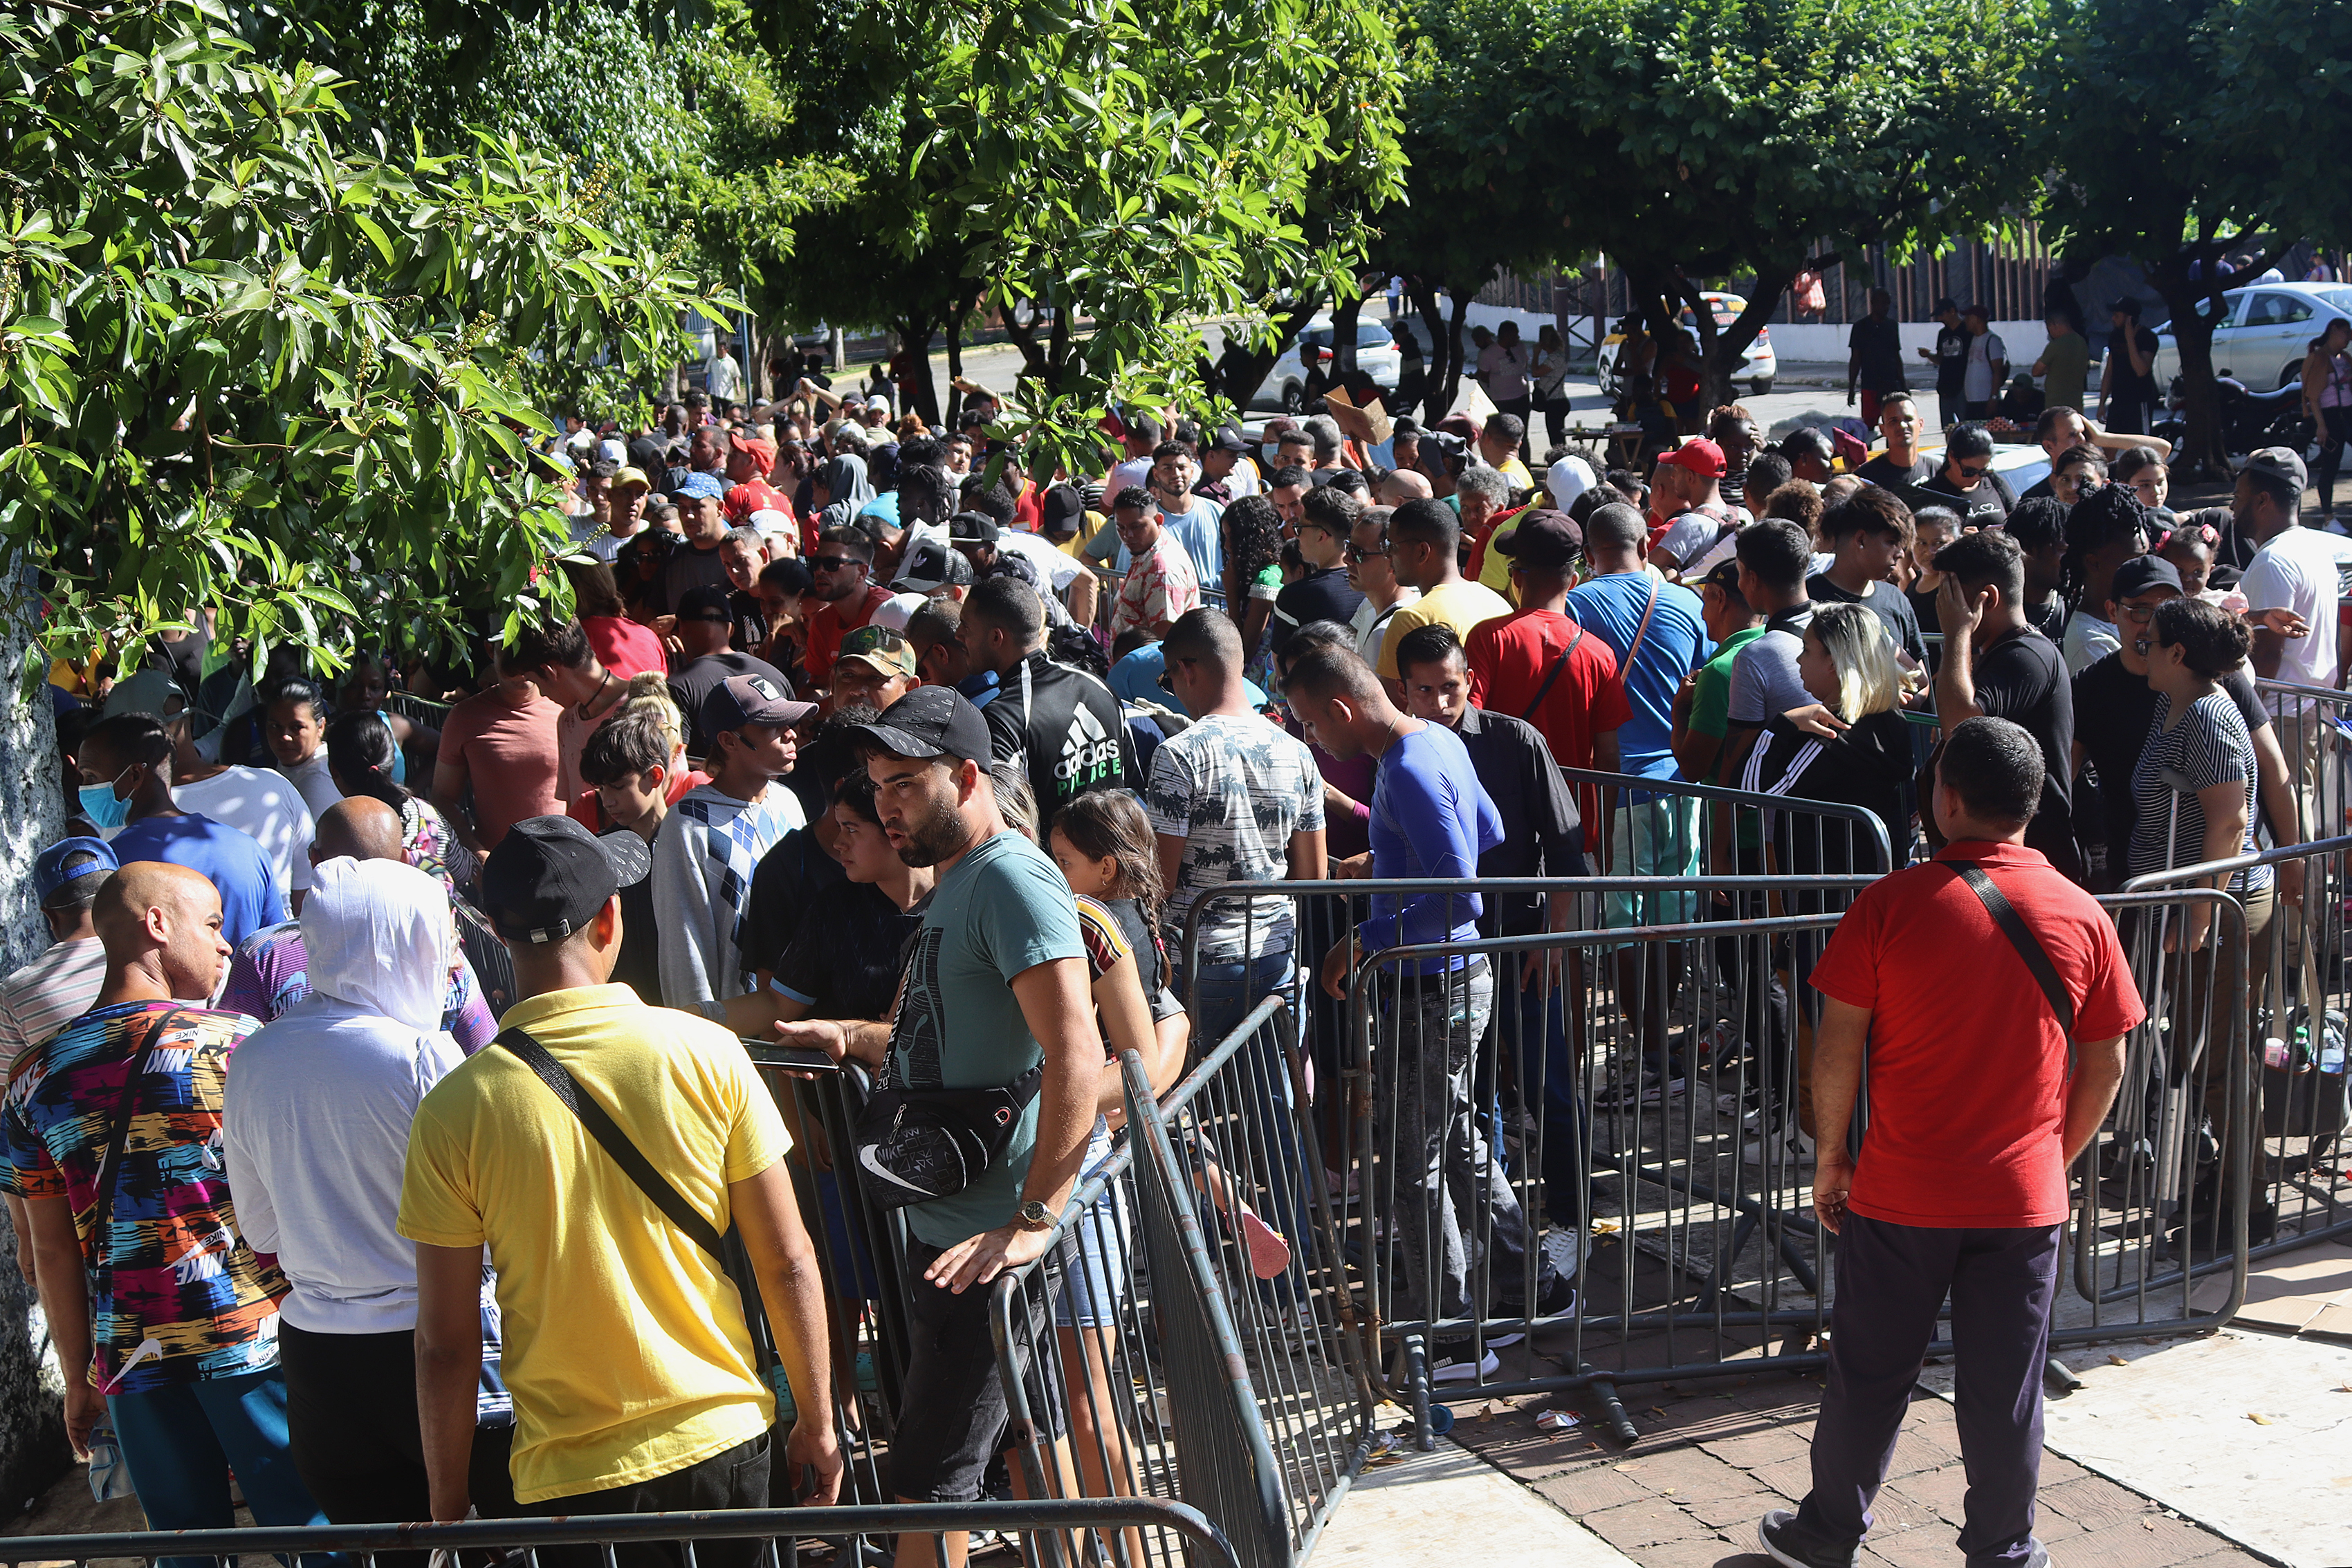 Cientos de inmigrantes esperan regularizar su situación migratoria pidiendo asilo en México.